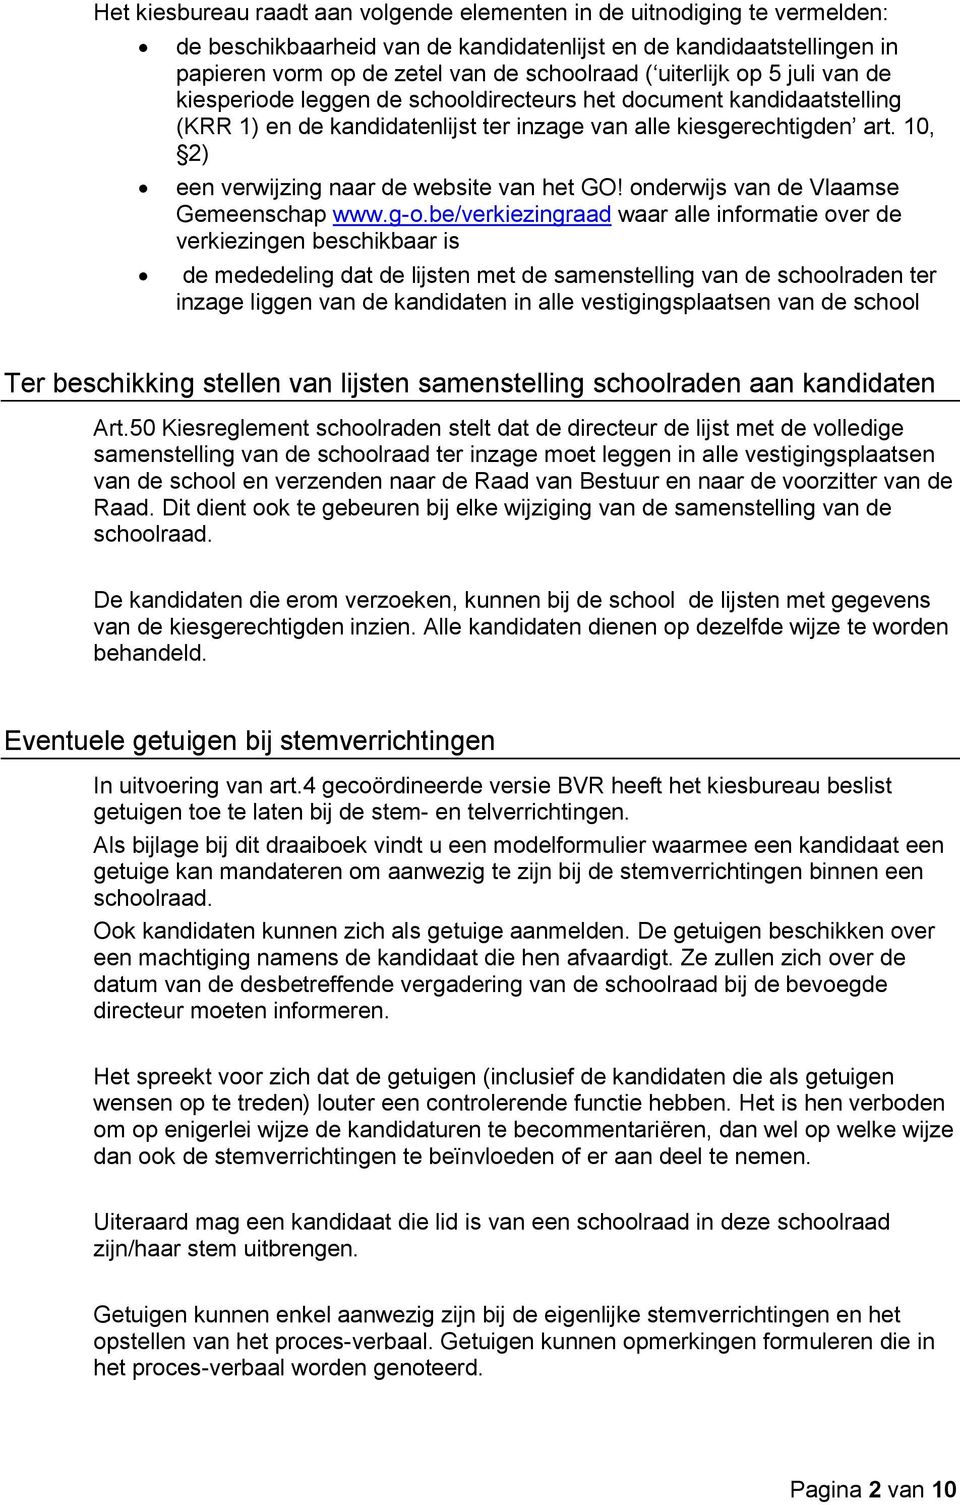 10, 2) een verwijzing naar de website van het GO! onderwijs van de Vlaamse Gemeenschap www.g-o.